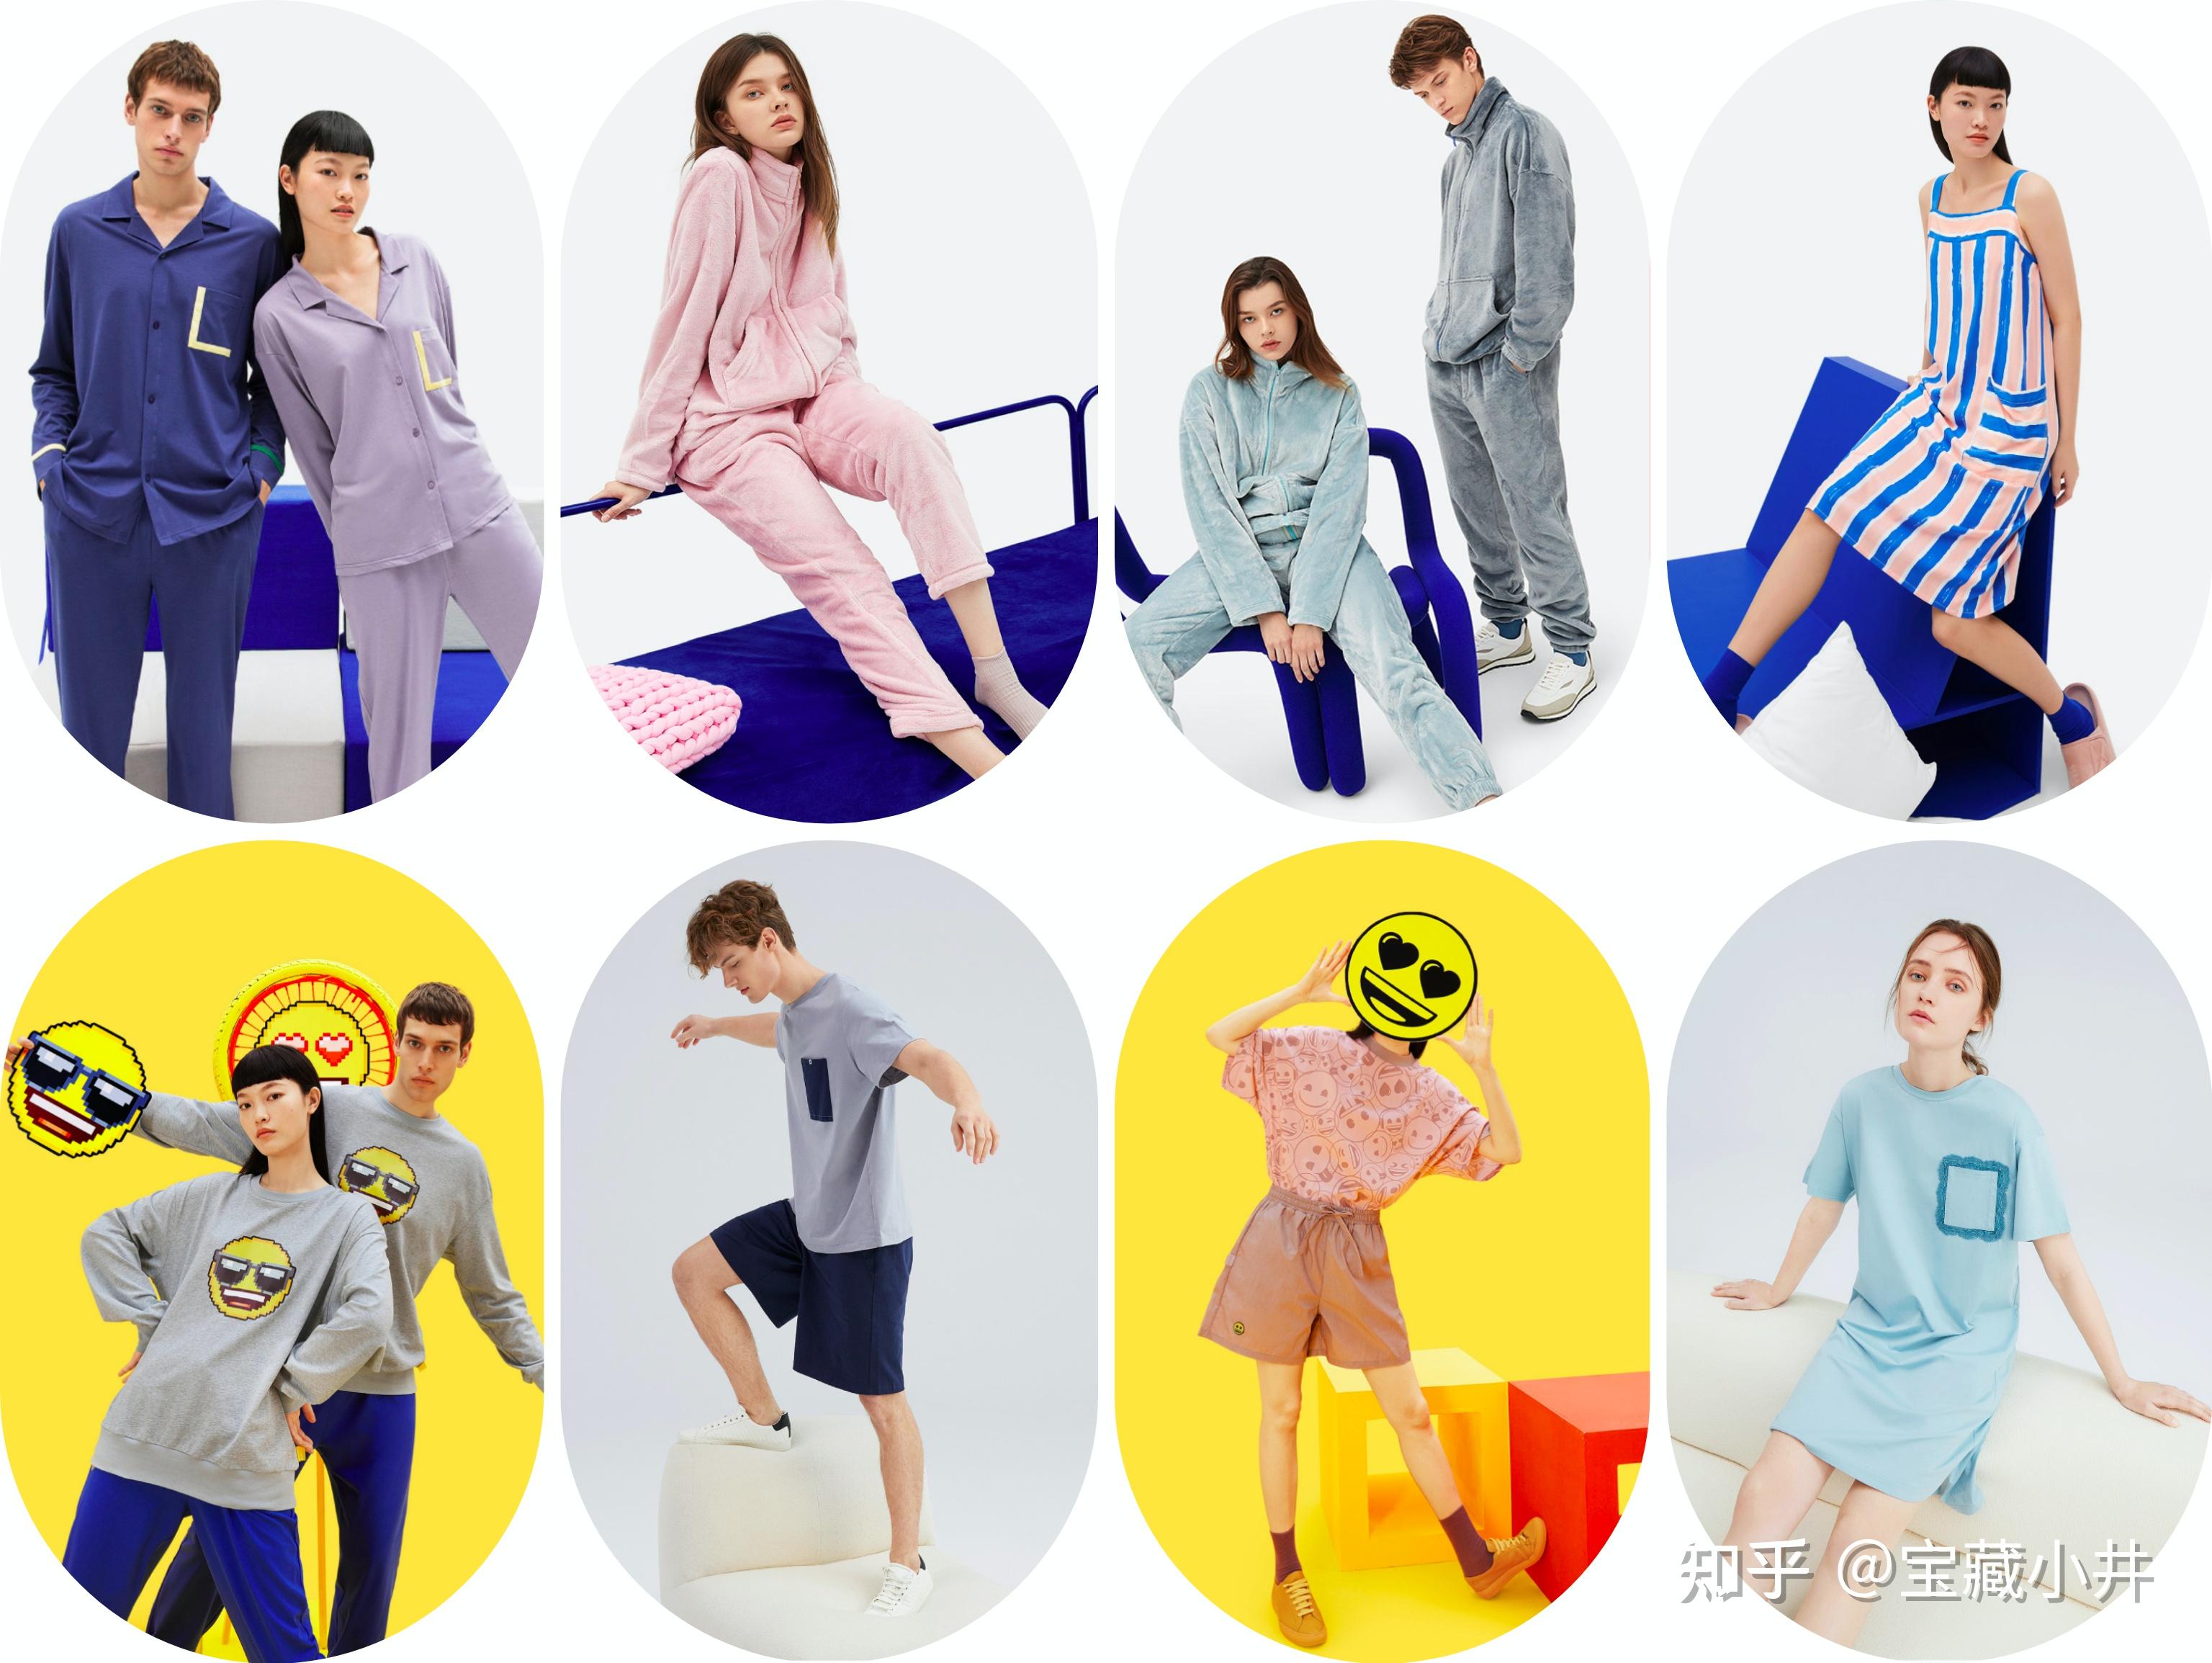 中国睡衣十大品牌 舒适好穿的睡衣品牌推荐 - 神奇评测